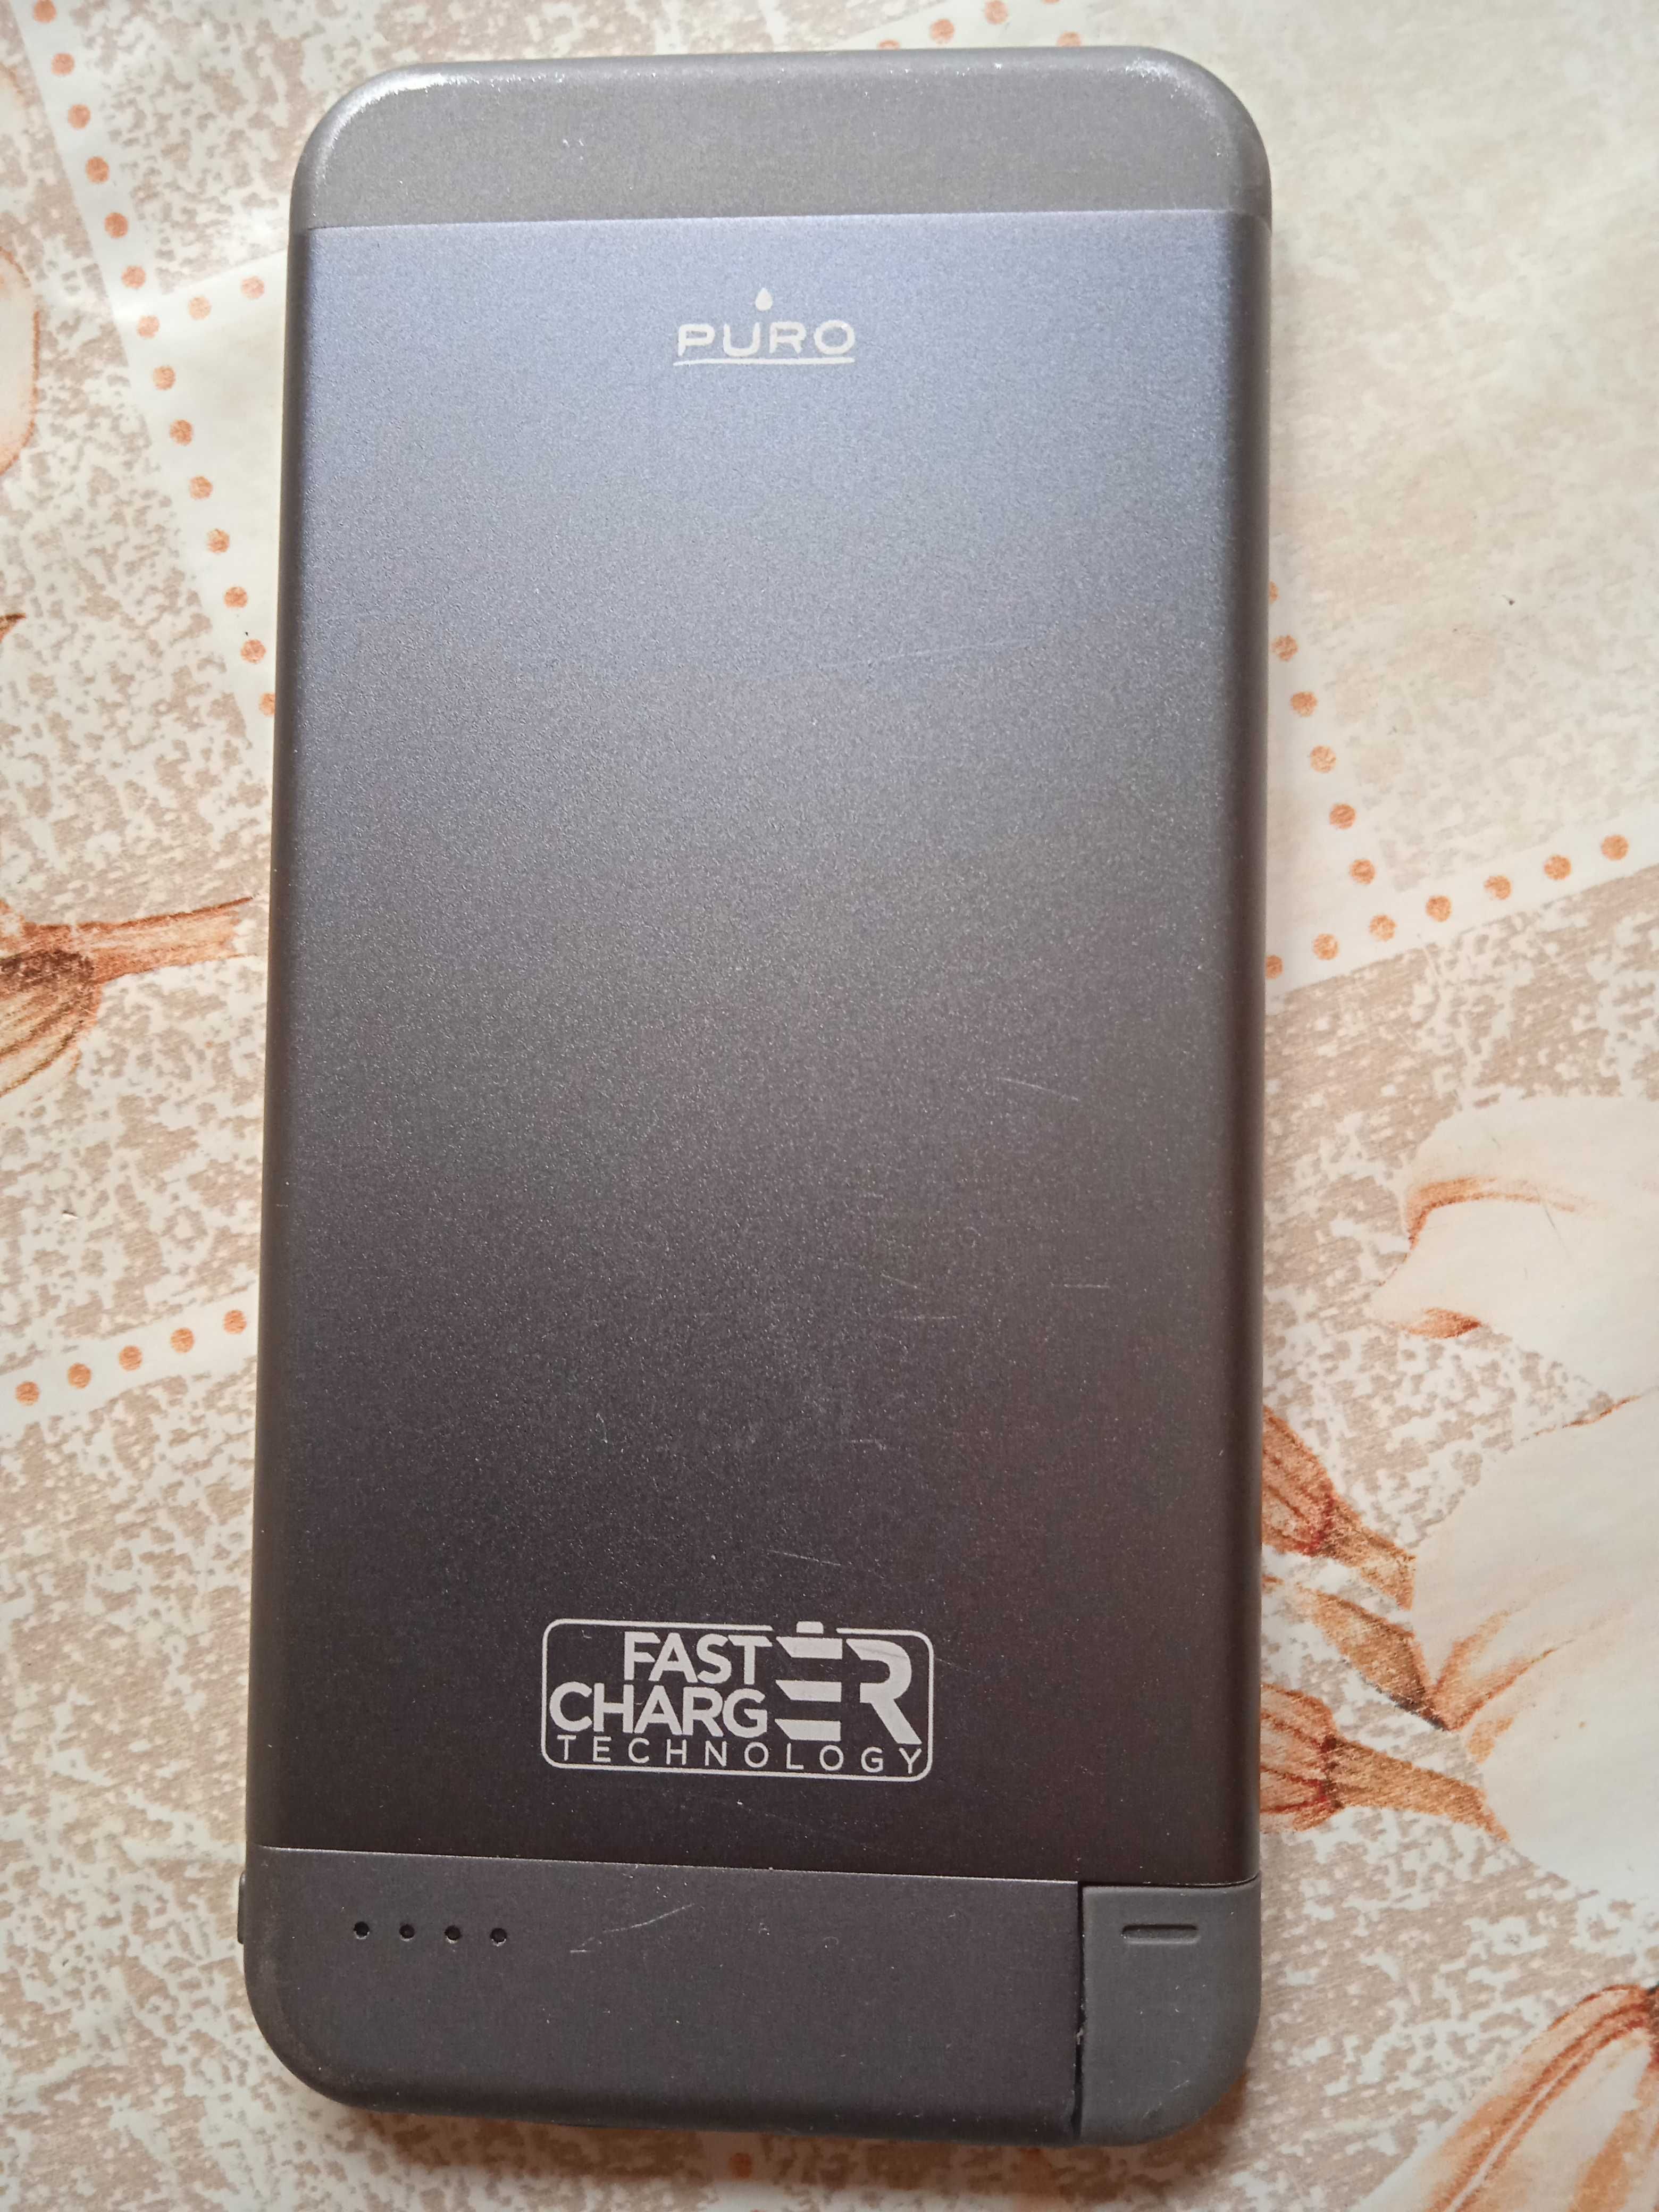 Външна батерия Puro Fast charger technology